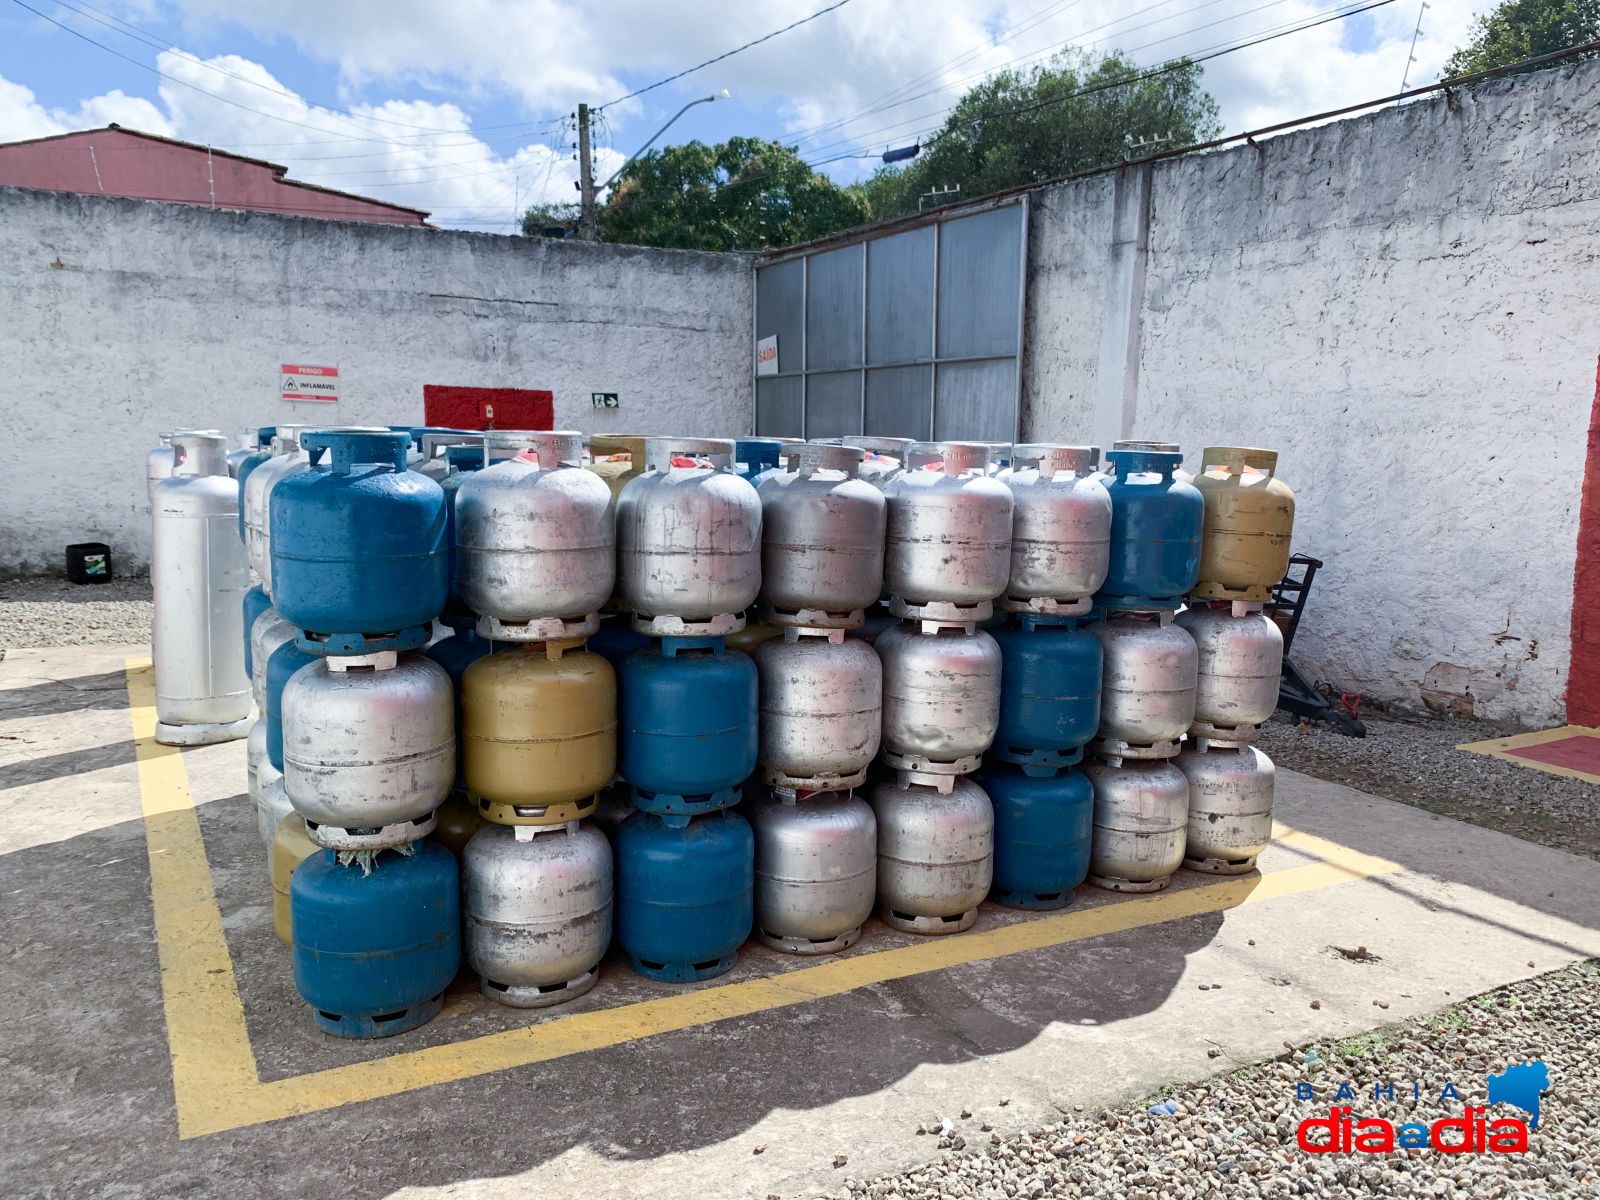 A empresa oferece gás P13 (cozinha), água mineral, além de acessórios para água, gás e utensílios.(Foto: Alex Gonçalves/BAHIA DIA A DIA)